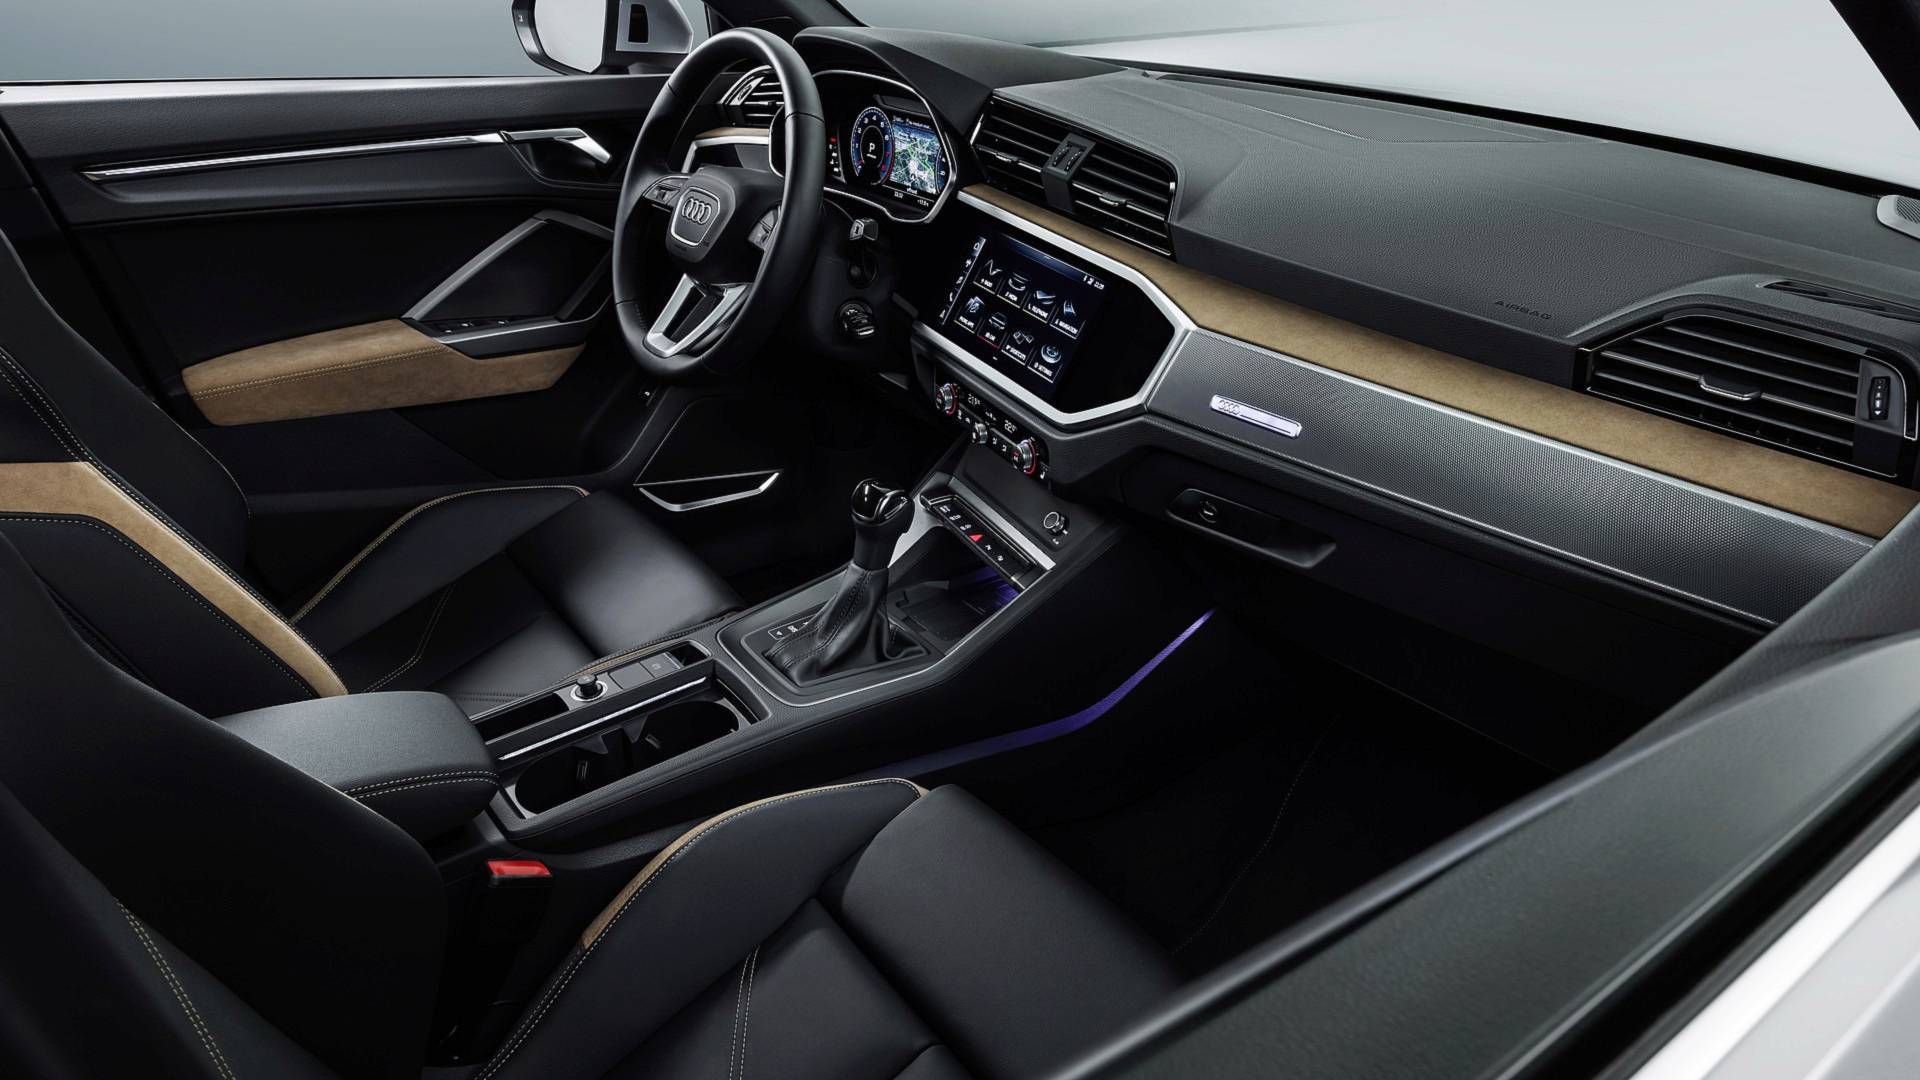 Oficial: 2019 Audi Q3, información y datos